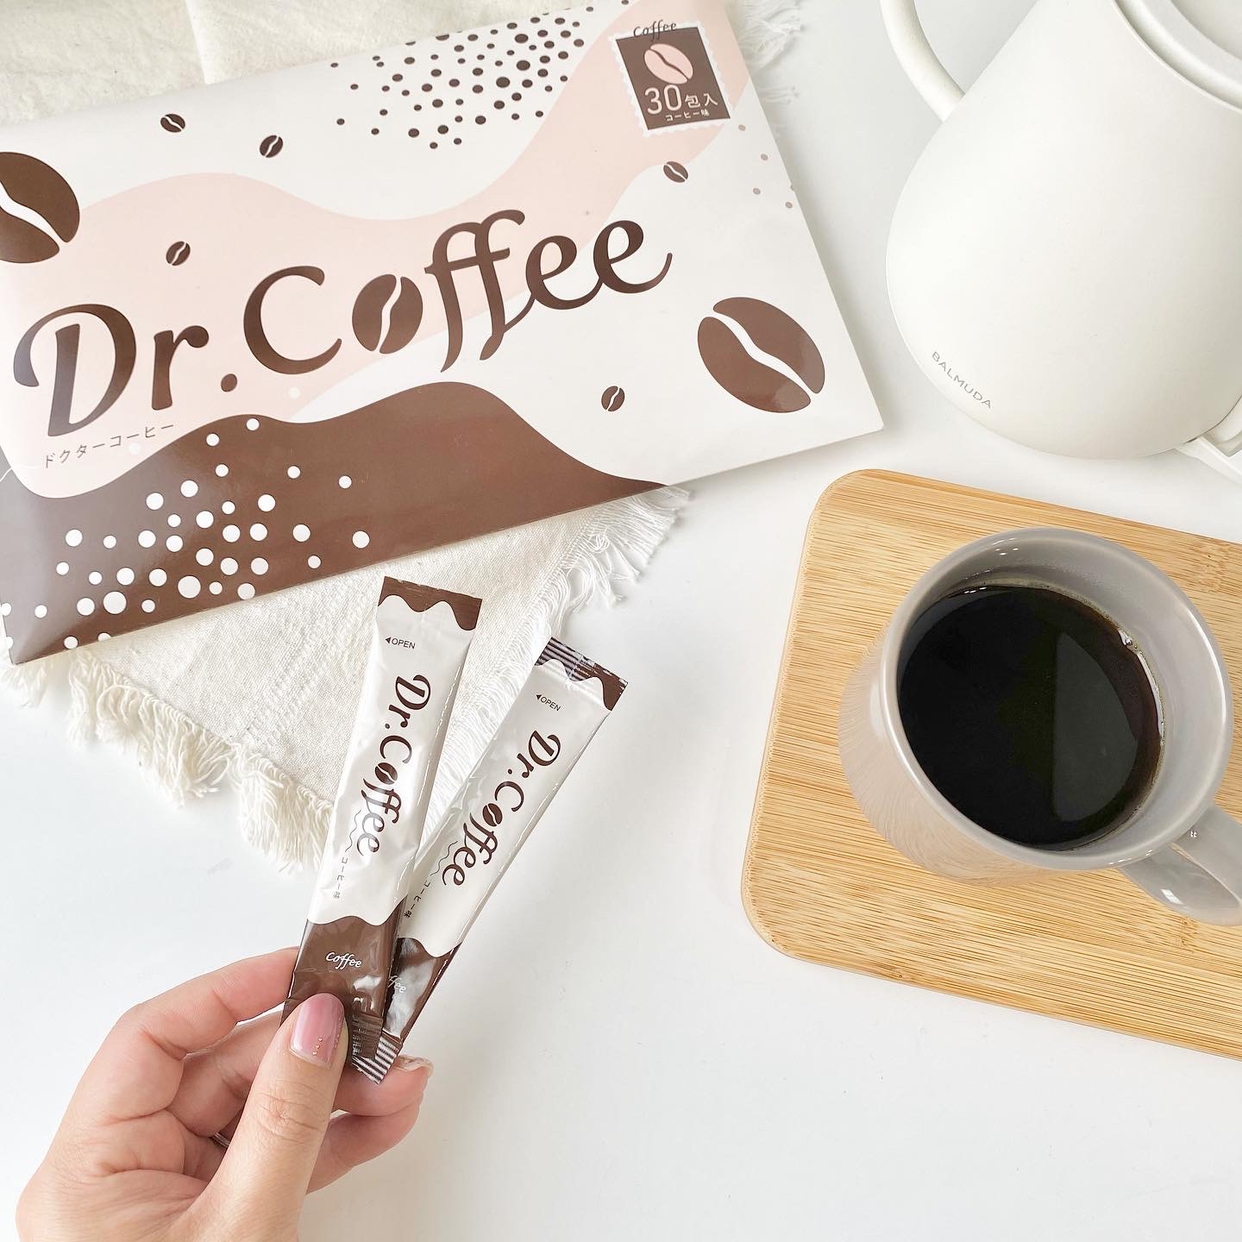 Dr.Coffee(ドクターコーヒー) キリッとコーヒークレンズを使ったnitaさんのクチコミ画像3